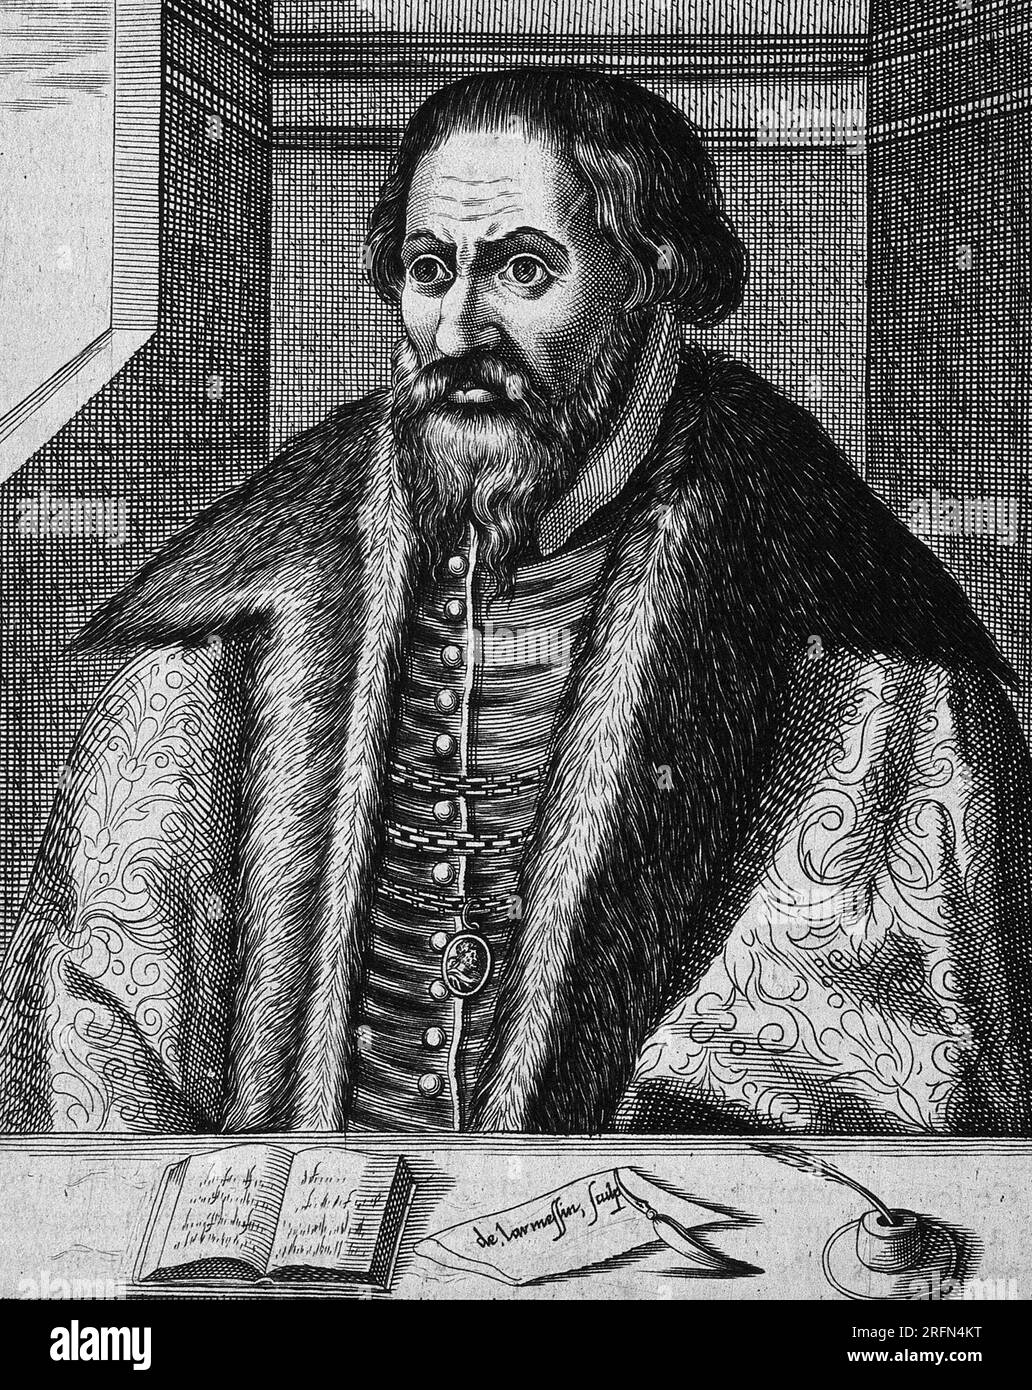 Pietro Andrea Mattioli (1501-c.1577), italienischer Arzt und Botaniker, der den ersten Fall einer Katzenallergie beschrieb. Als Botaniker beschrieb er 100 neue Pflanzen und koordinierte die medizinische Botanik seiner Zeit in seiner Discorsi (Kommentare). Strichgravierung von N. de Larmessin, 1682, nach C. Papi dell'Altissimo. Stockfoto